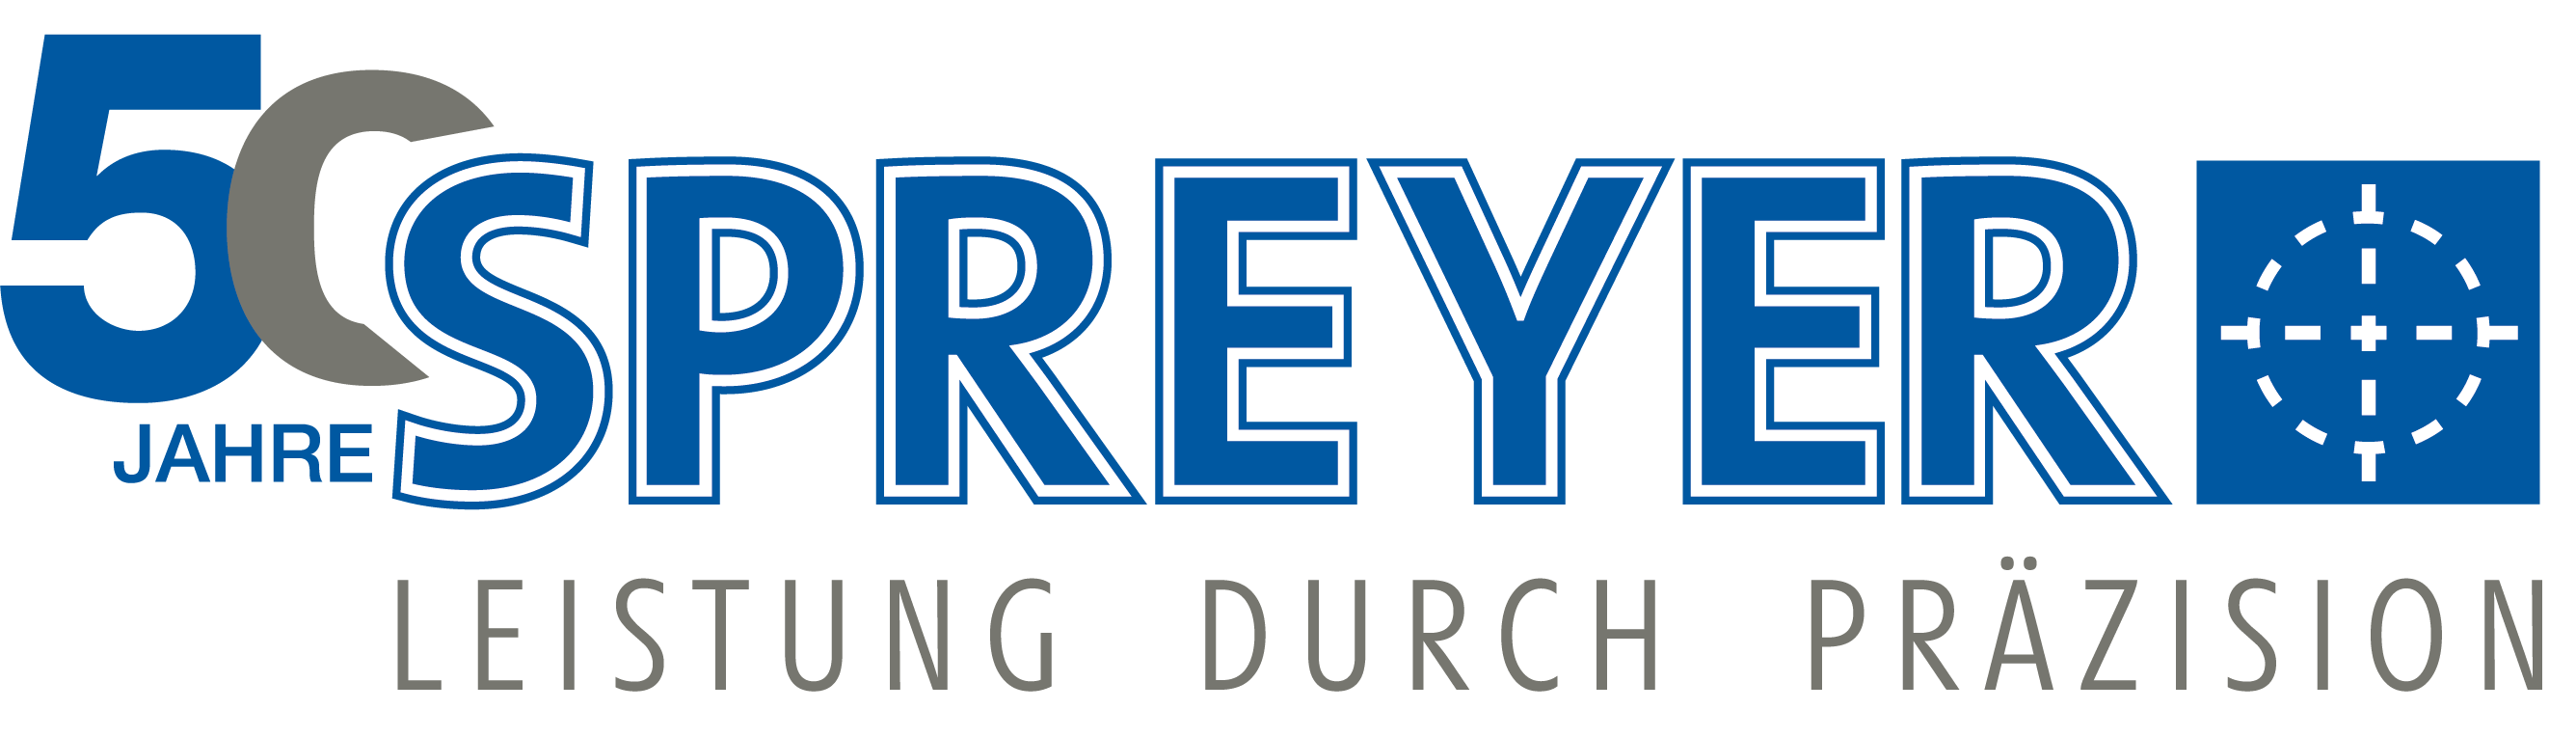 50 Jahre Spreyer Logo